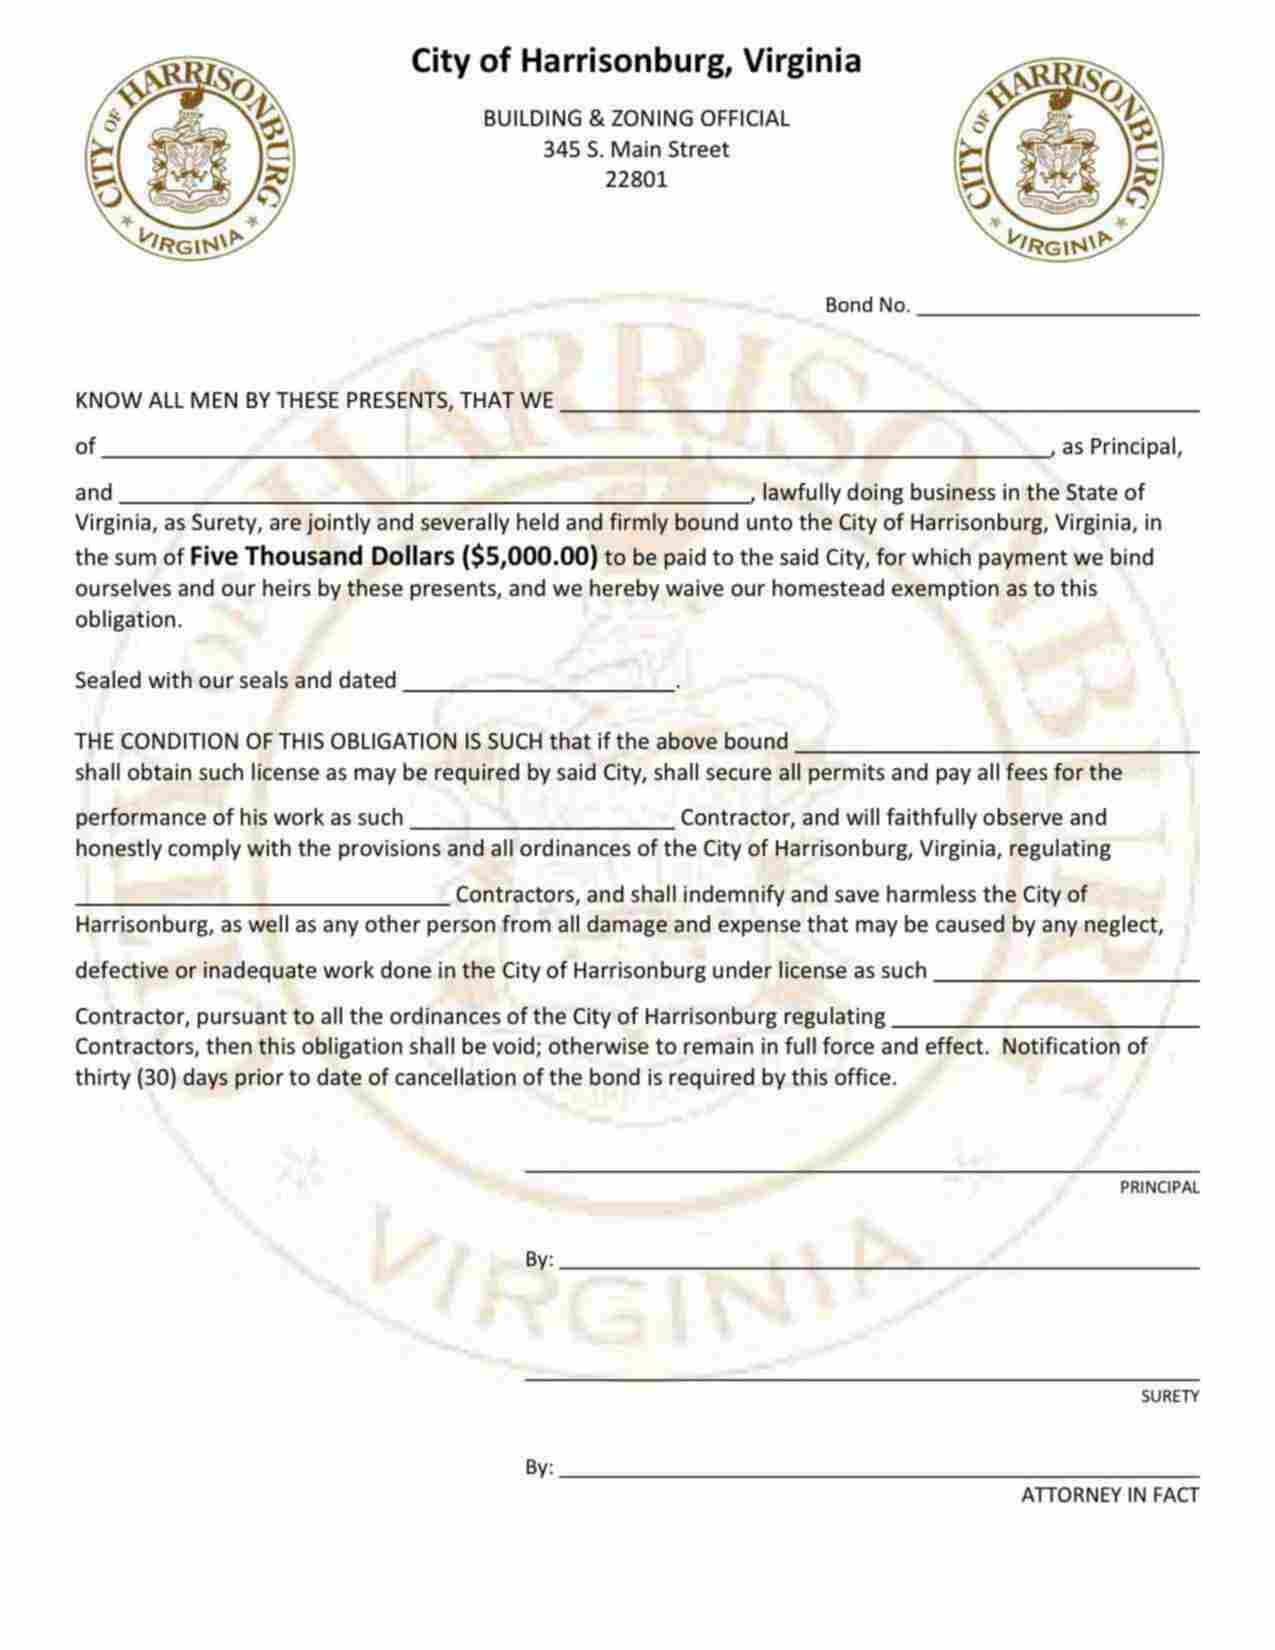 Virginia Contractor License Bond Form